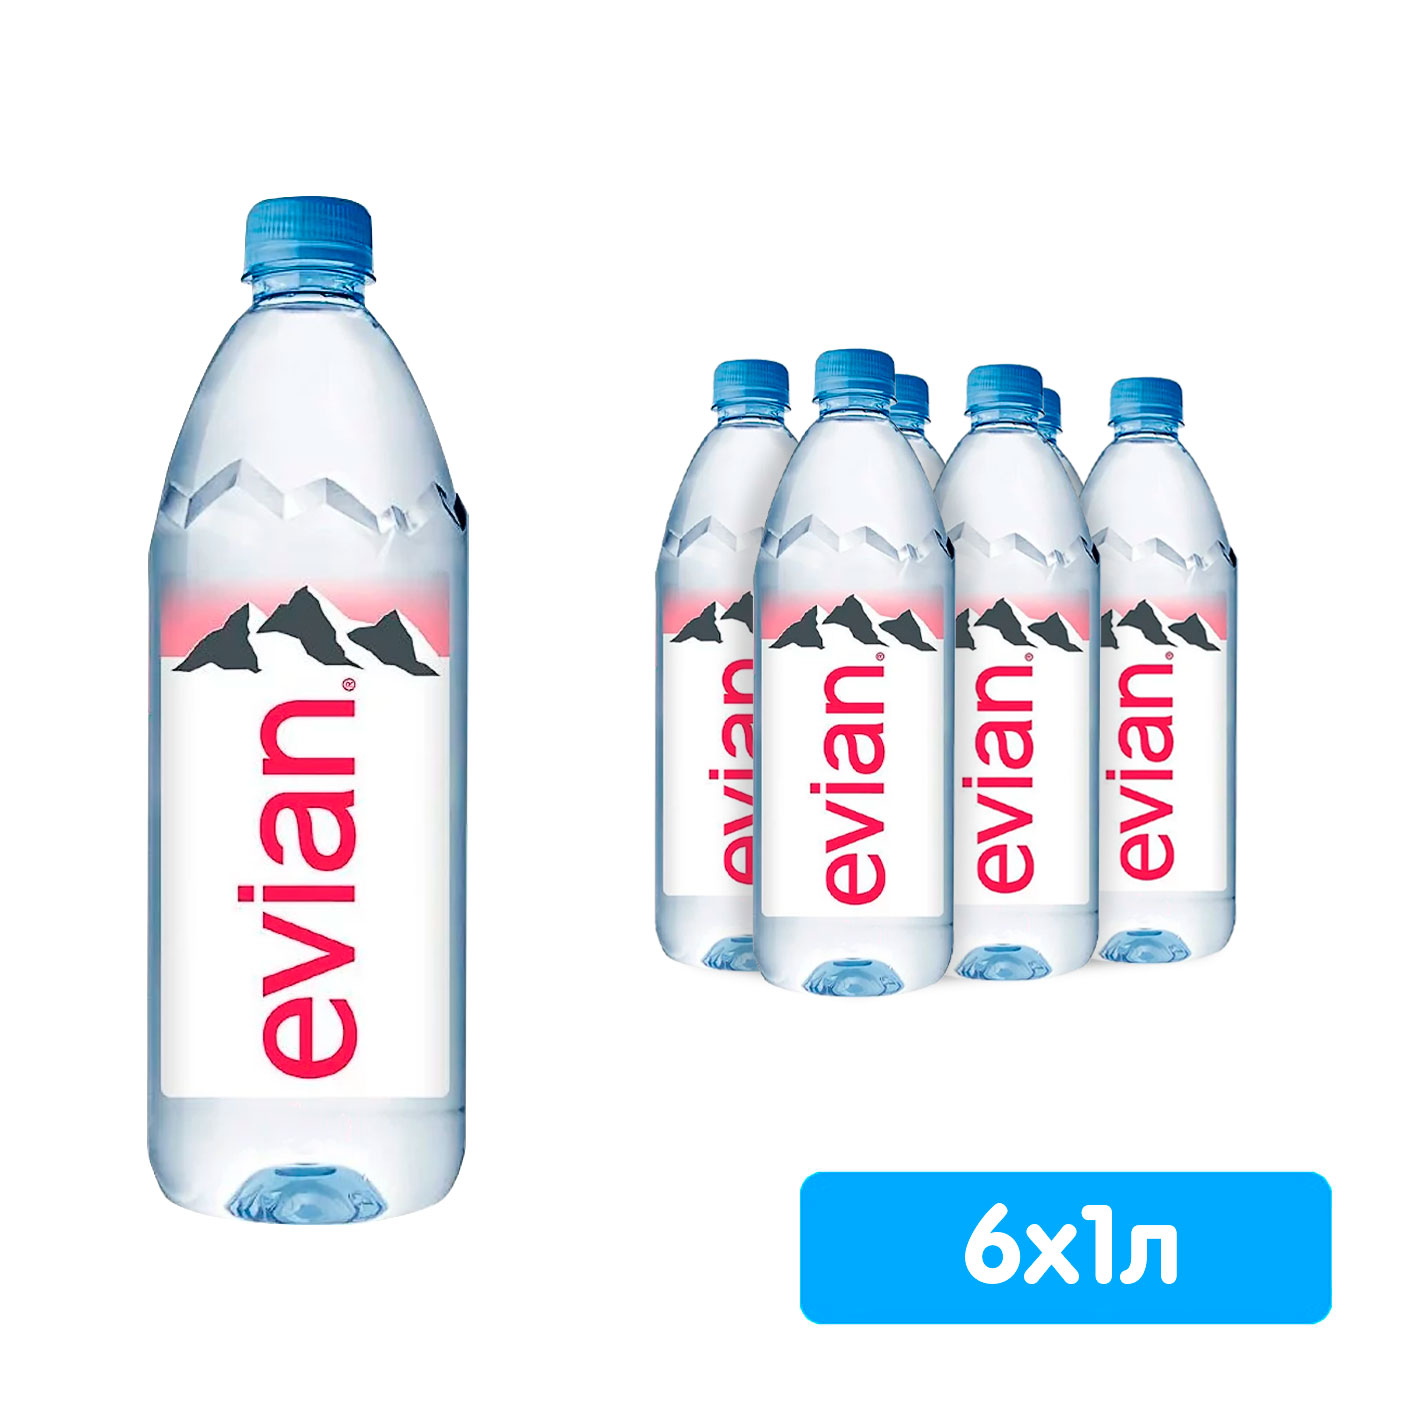 Вода Evian 1 литр, без газа, пэт, 6 шт. в уп.